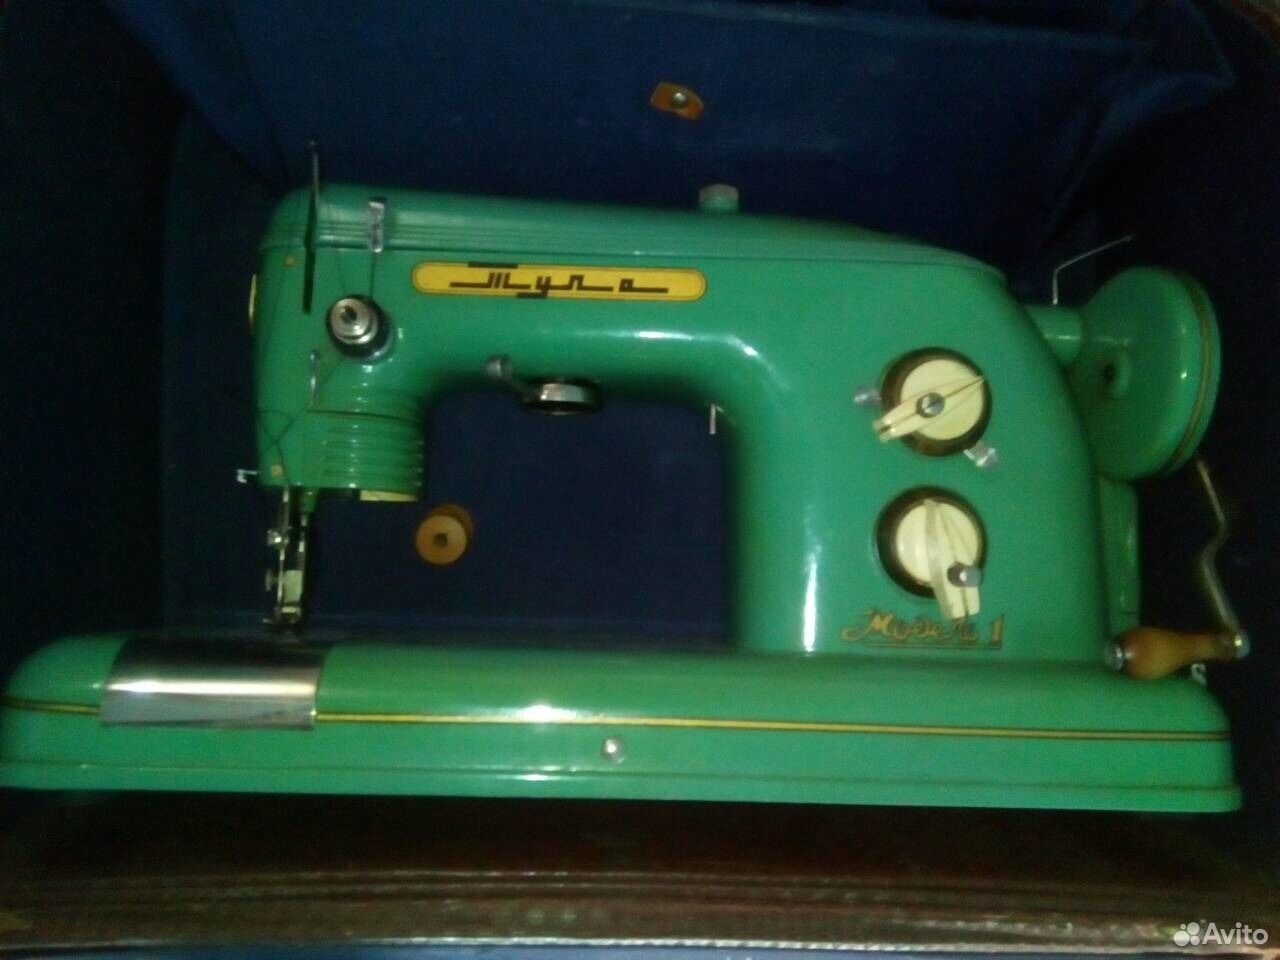 Швейная машинка тула модель. Тула 1 швейная машинка. Швейная машинка Тула модель 1. Швейная машинка Тула 1960. Швейная машина Тула Зундап.